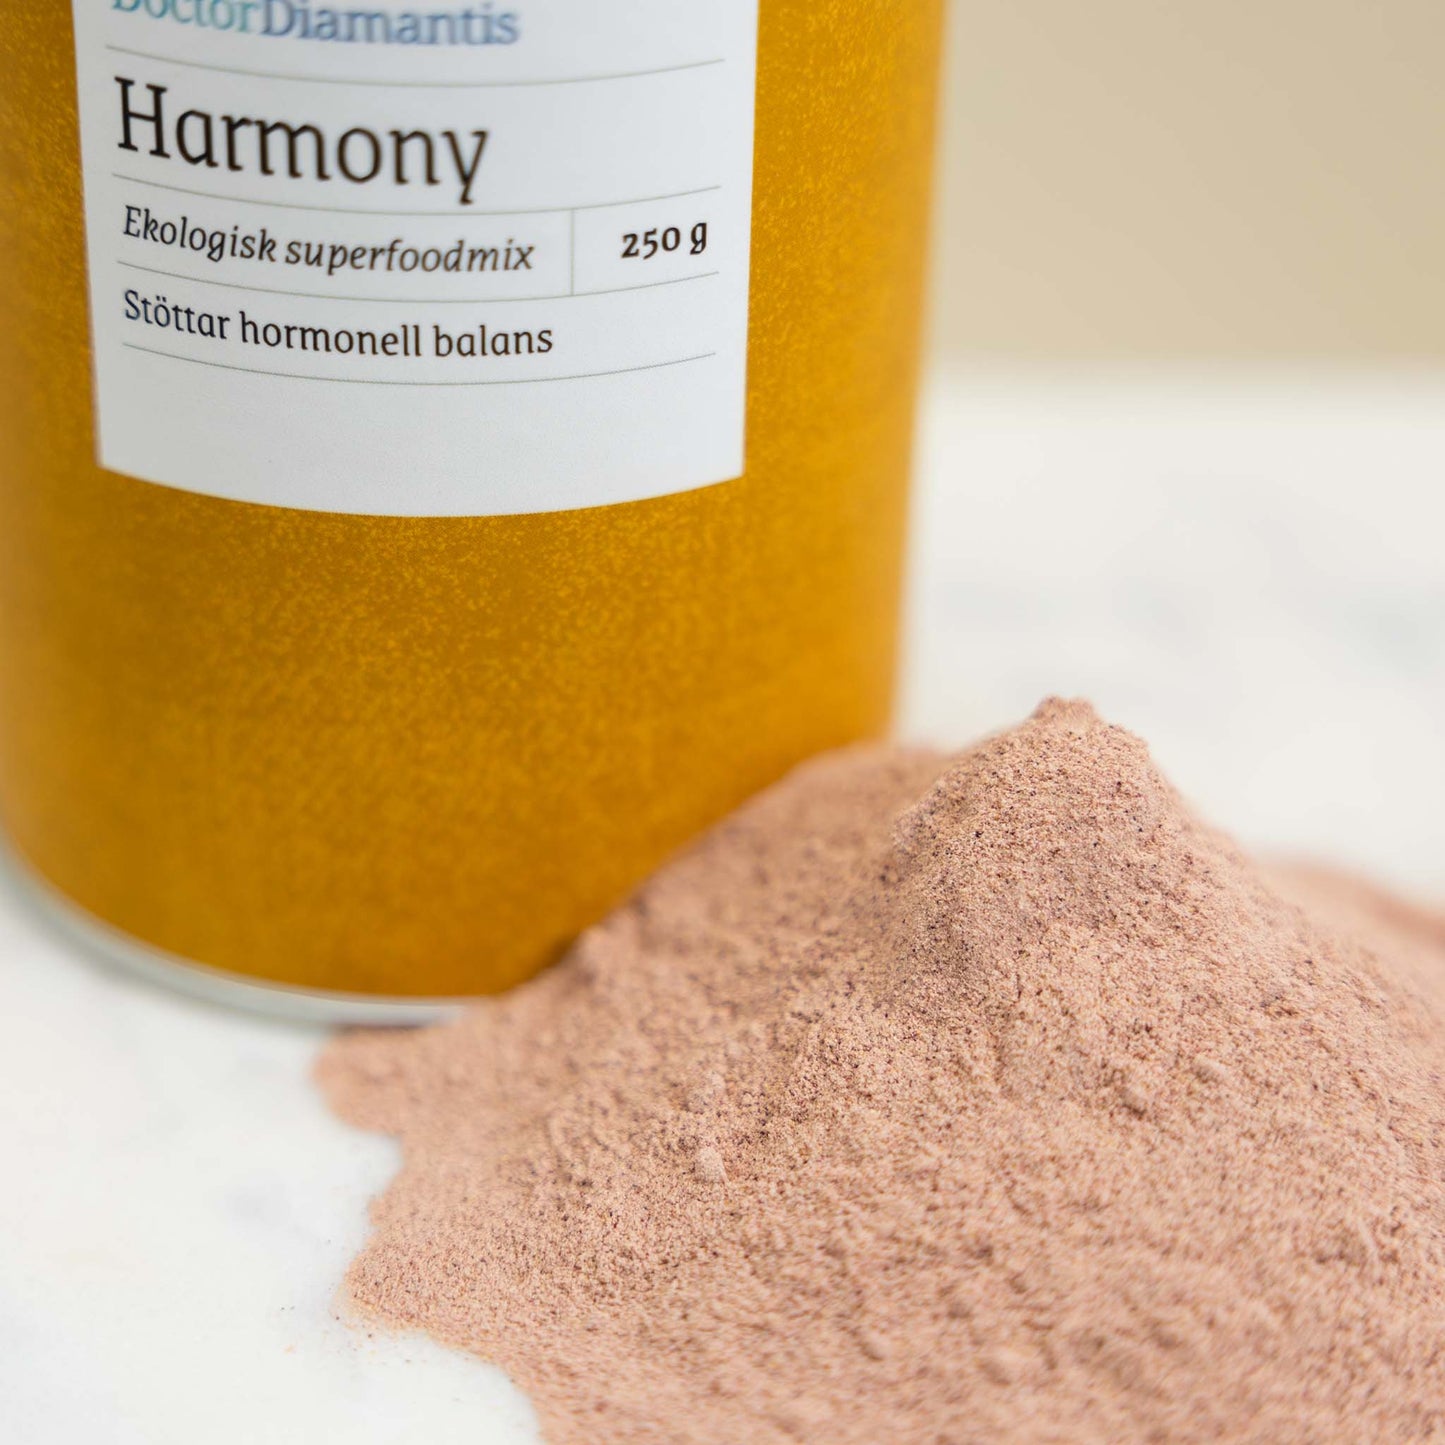 
                  
                    Harmony - Ekologisk superfoodmix
                  
                